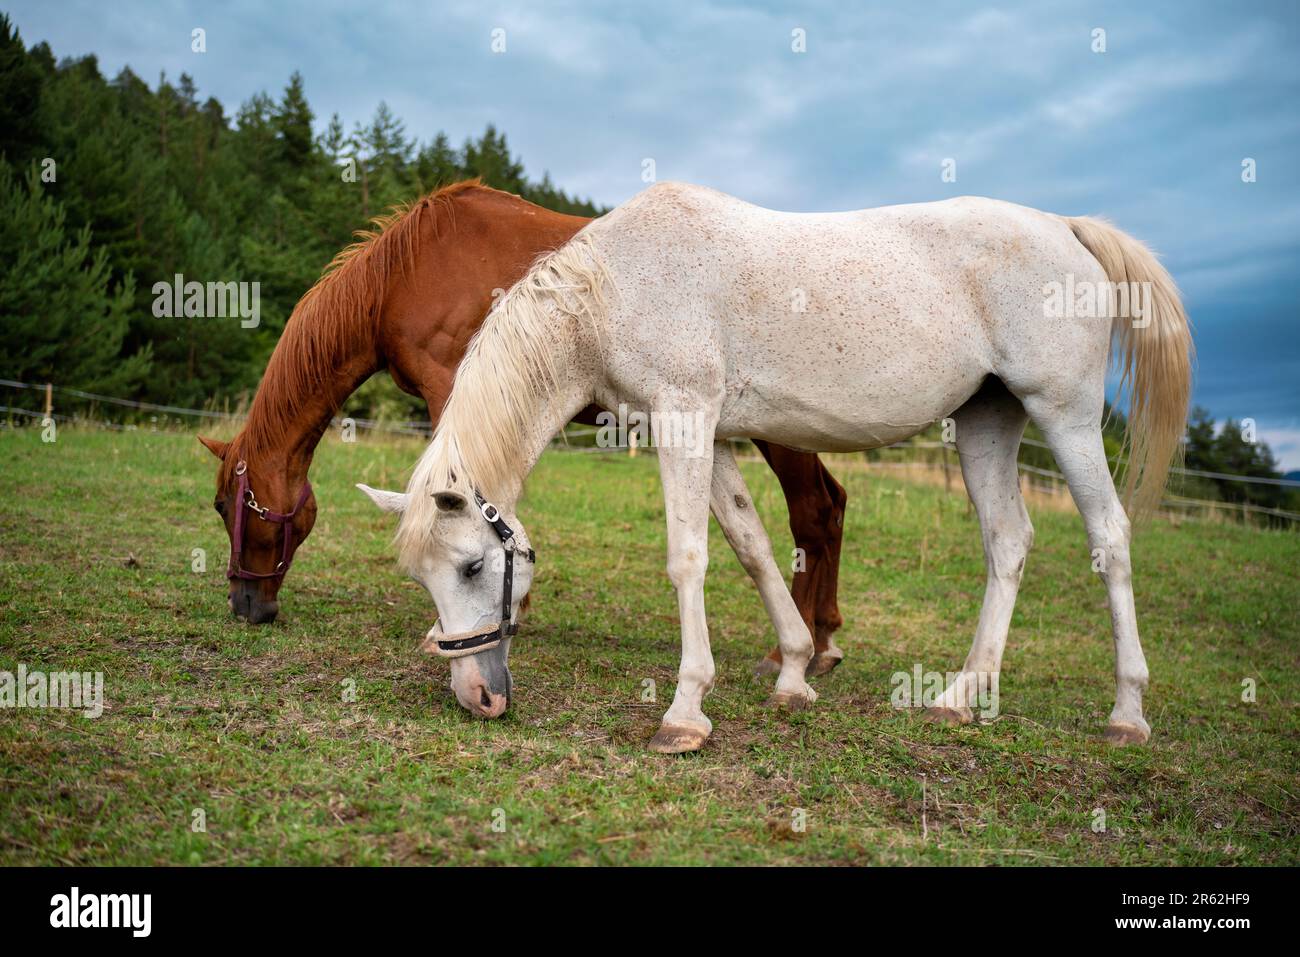 Deux chevaux arabes - blancs et bruns derrière - paître sur la prairie d'été, brouillé arrière-plan de forêt de conifères Banque D'Images